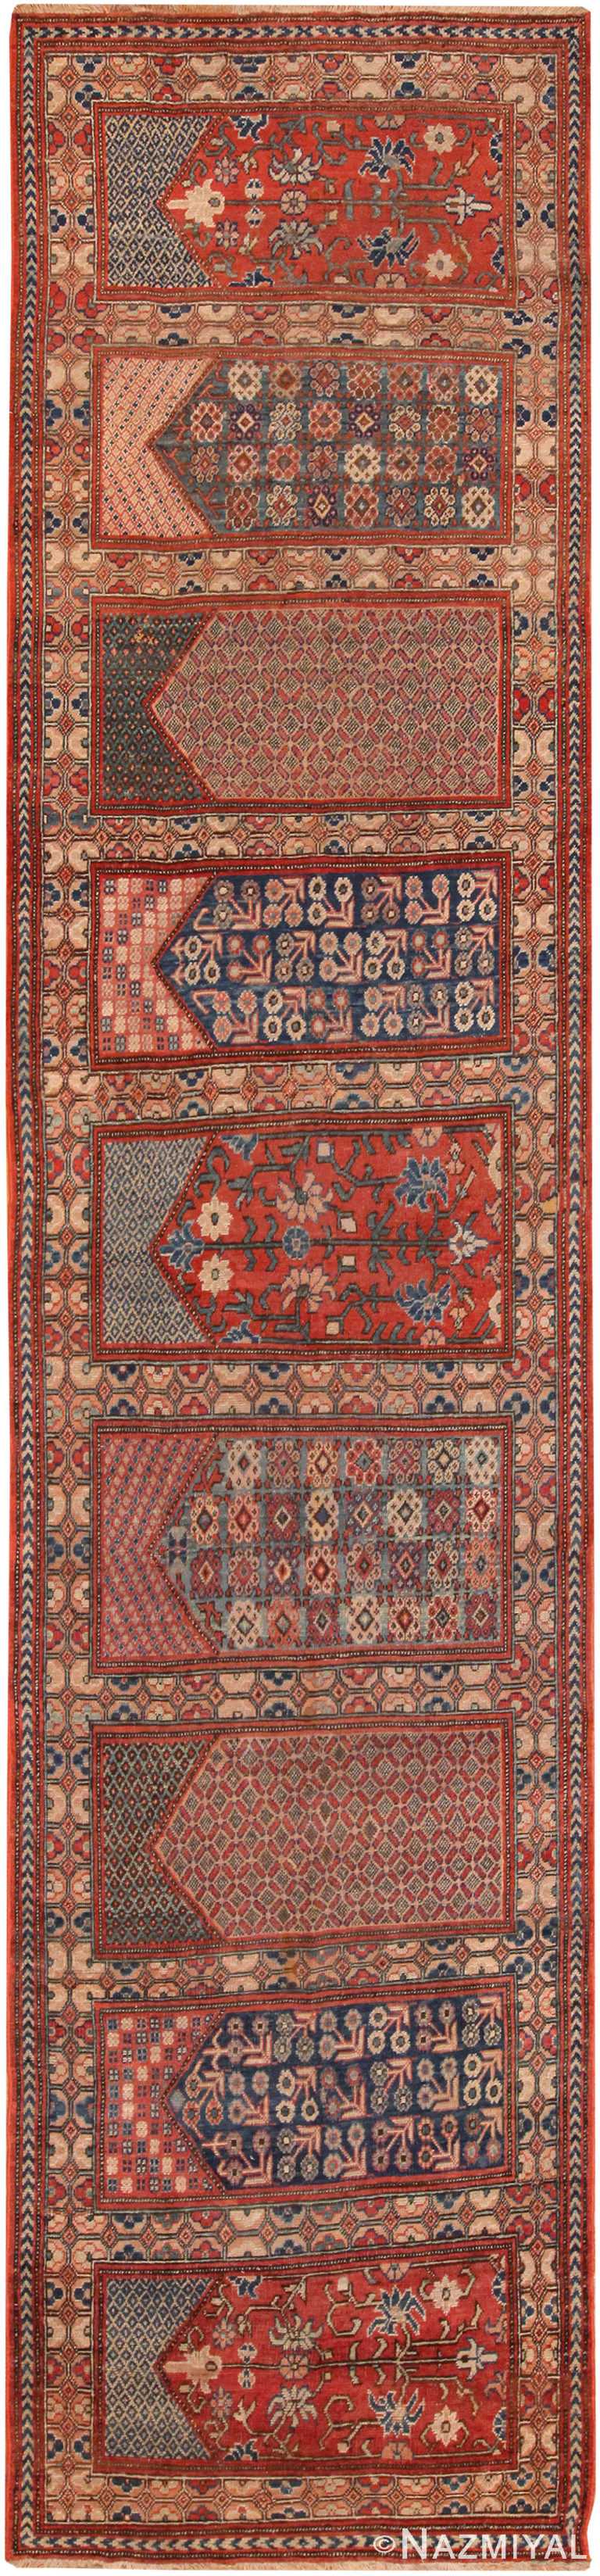 Large Antique East Turkistan Khotan Saf Prayer Rug 71584 by Nazmiyal Antique Rugs